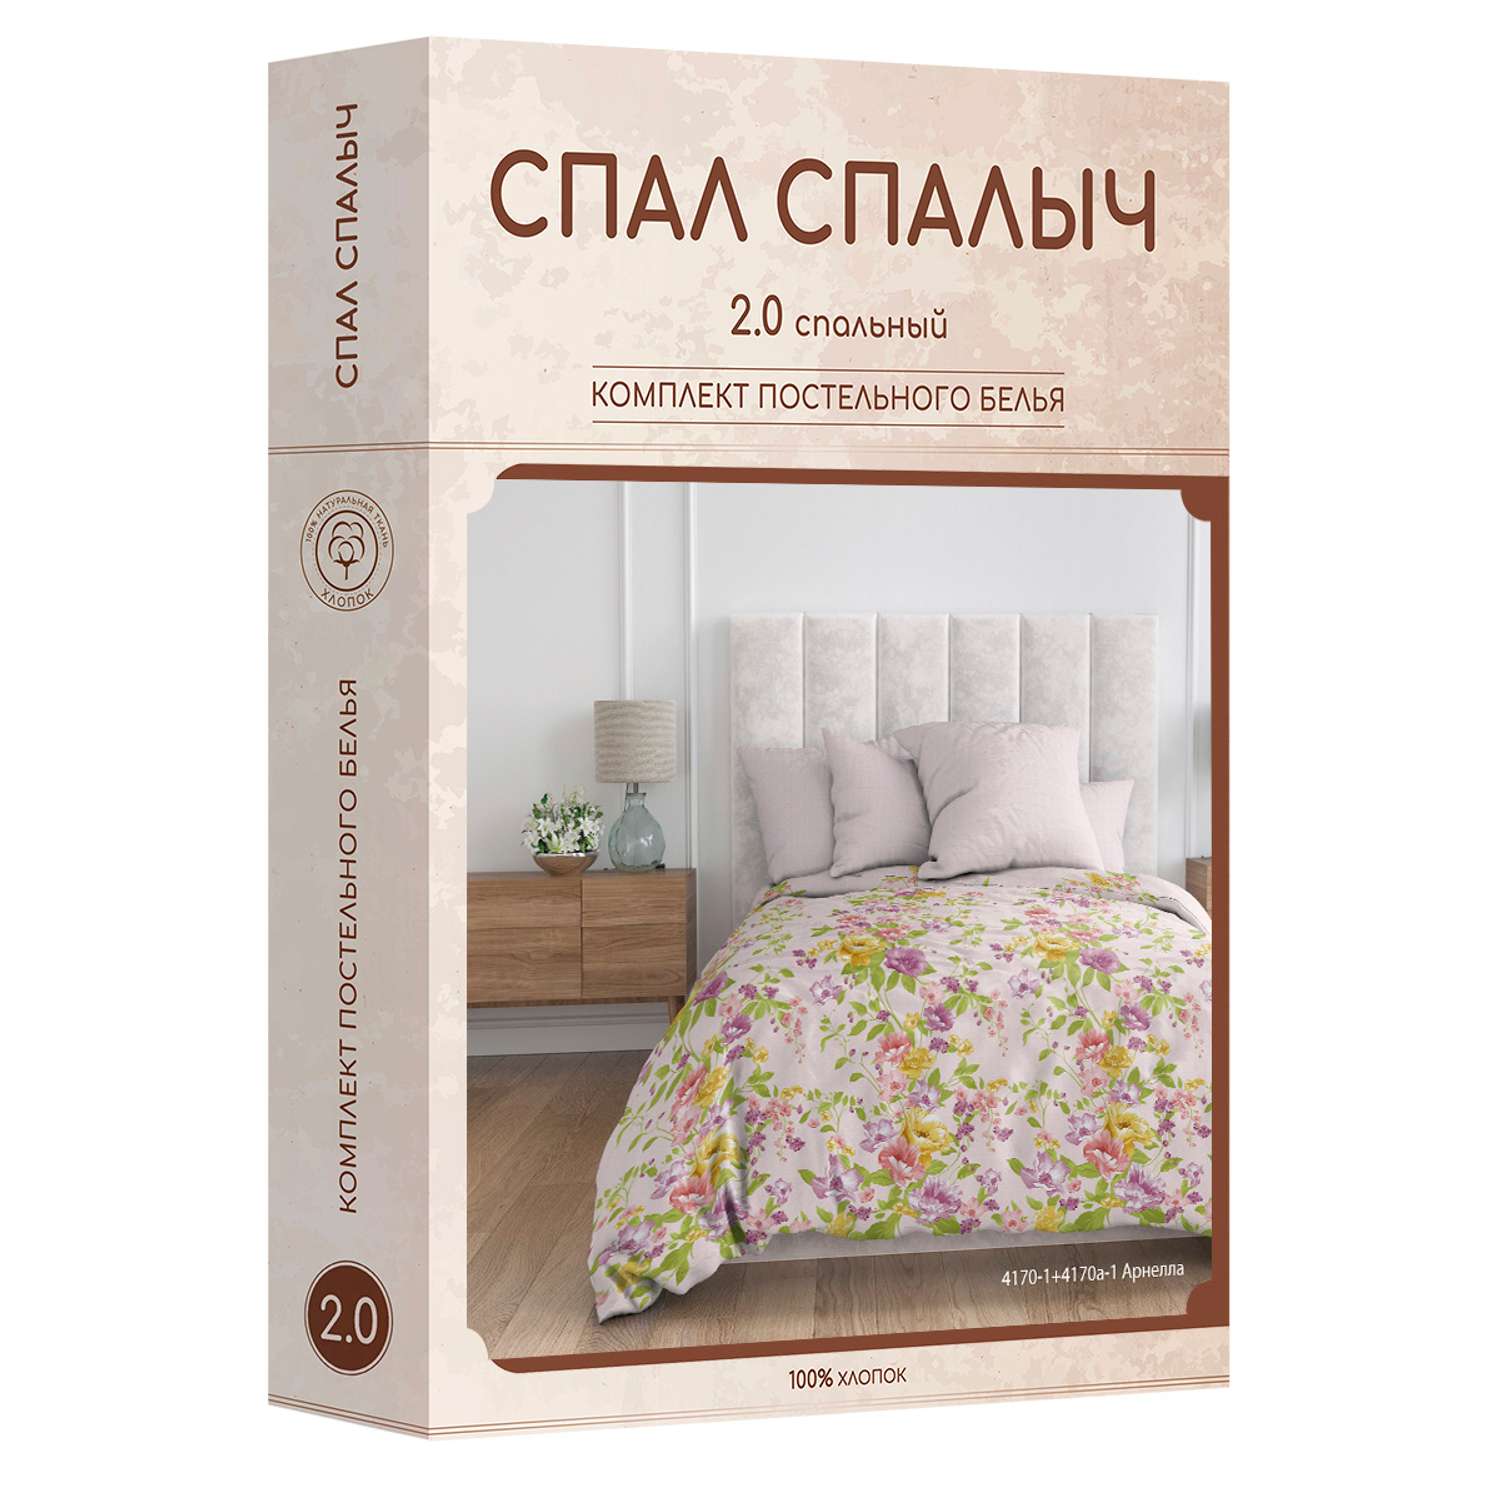 Комплект постельного белья Спал Спалыч Арнелла 2-спальный макси - фото 7